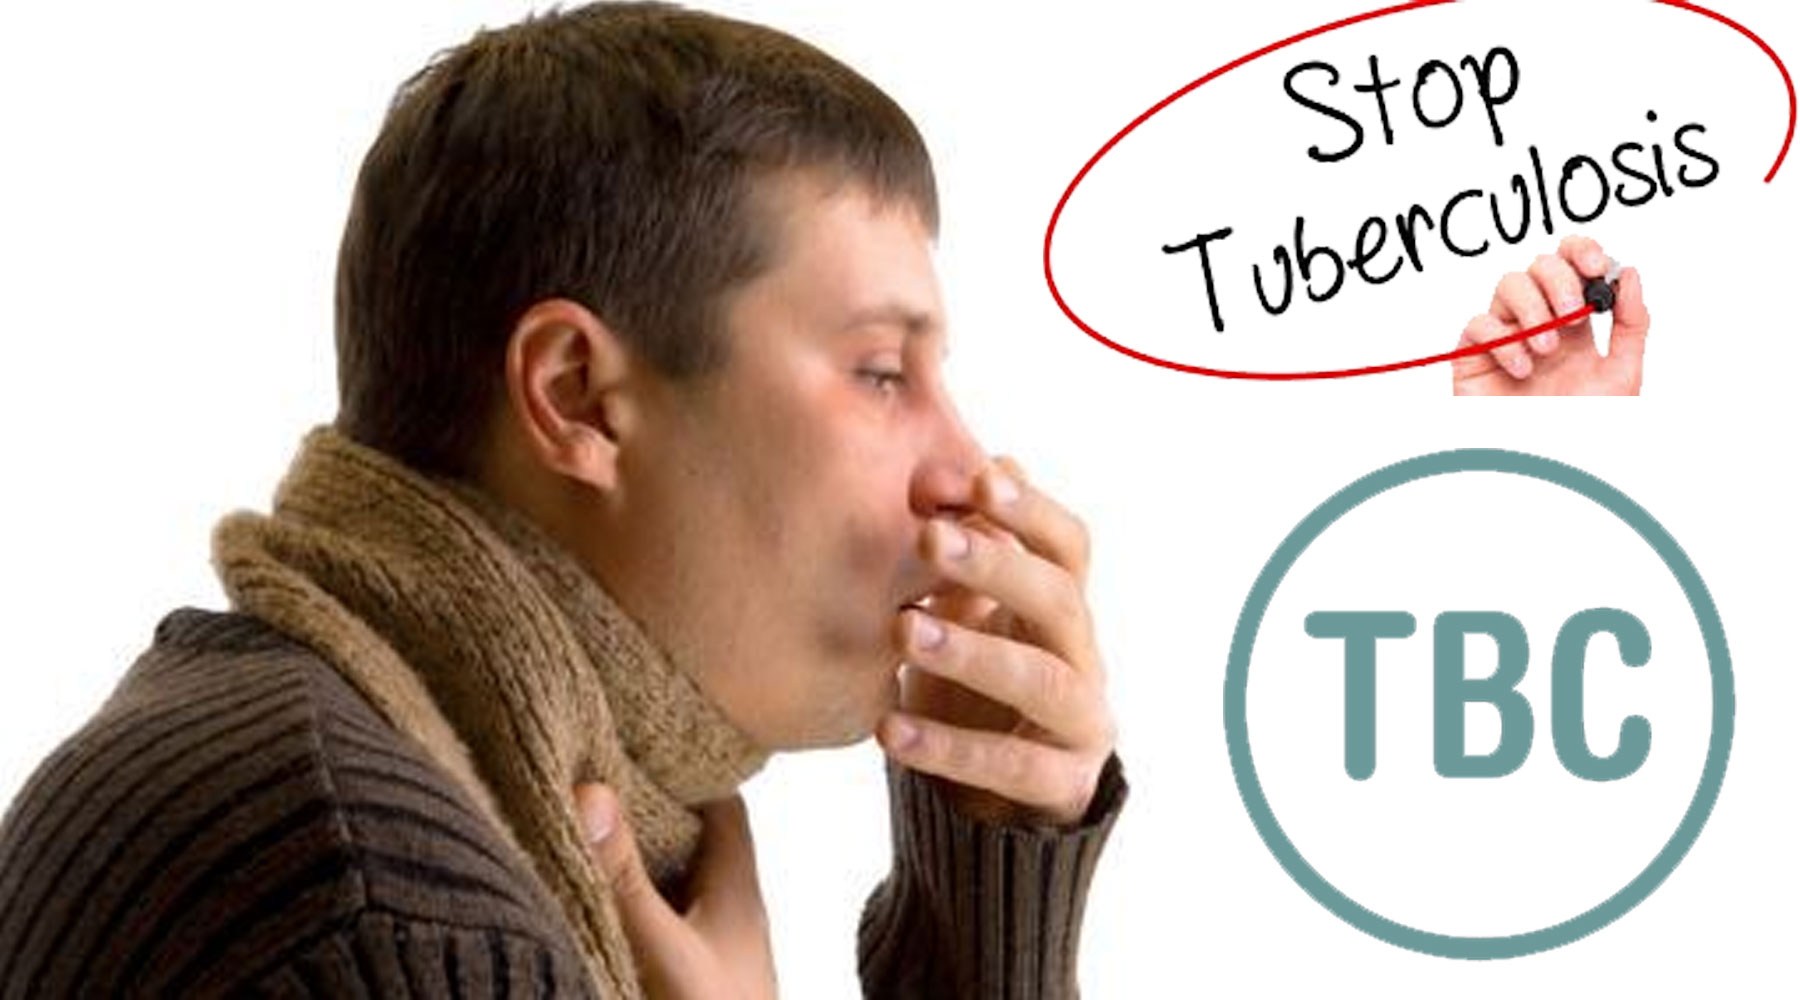 Ini Dia Penyebab Penyakit Tbc - Web Developer Dan Digital 